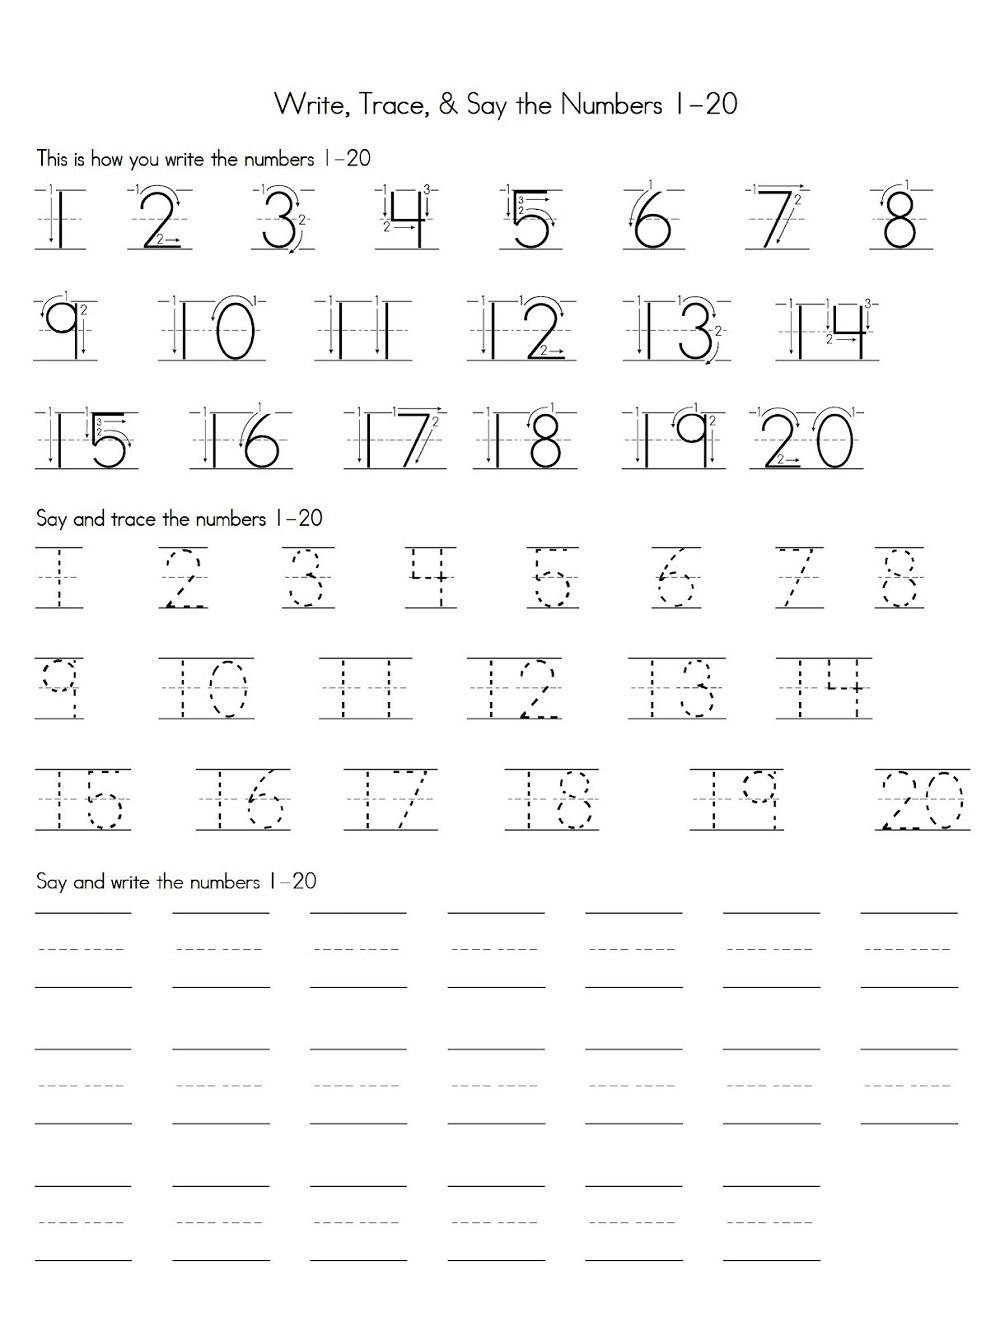 practice-writing-numbers-worksheet-free-printable-digital-pdf